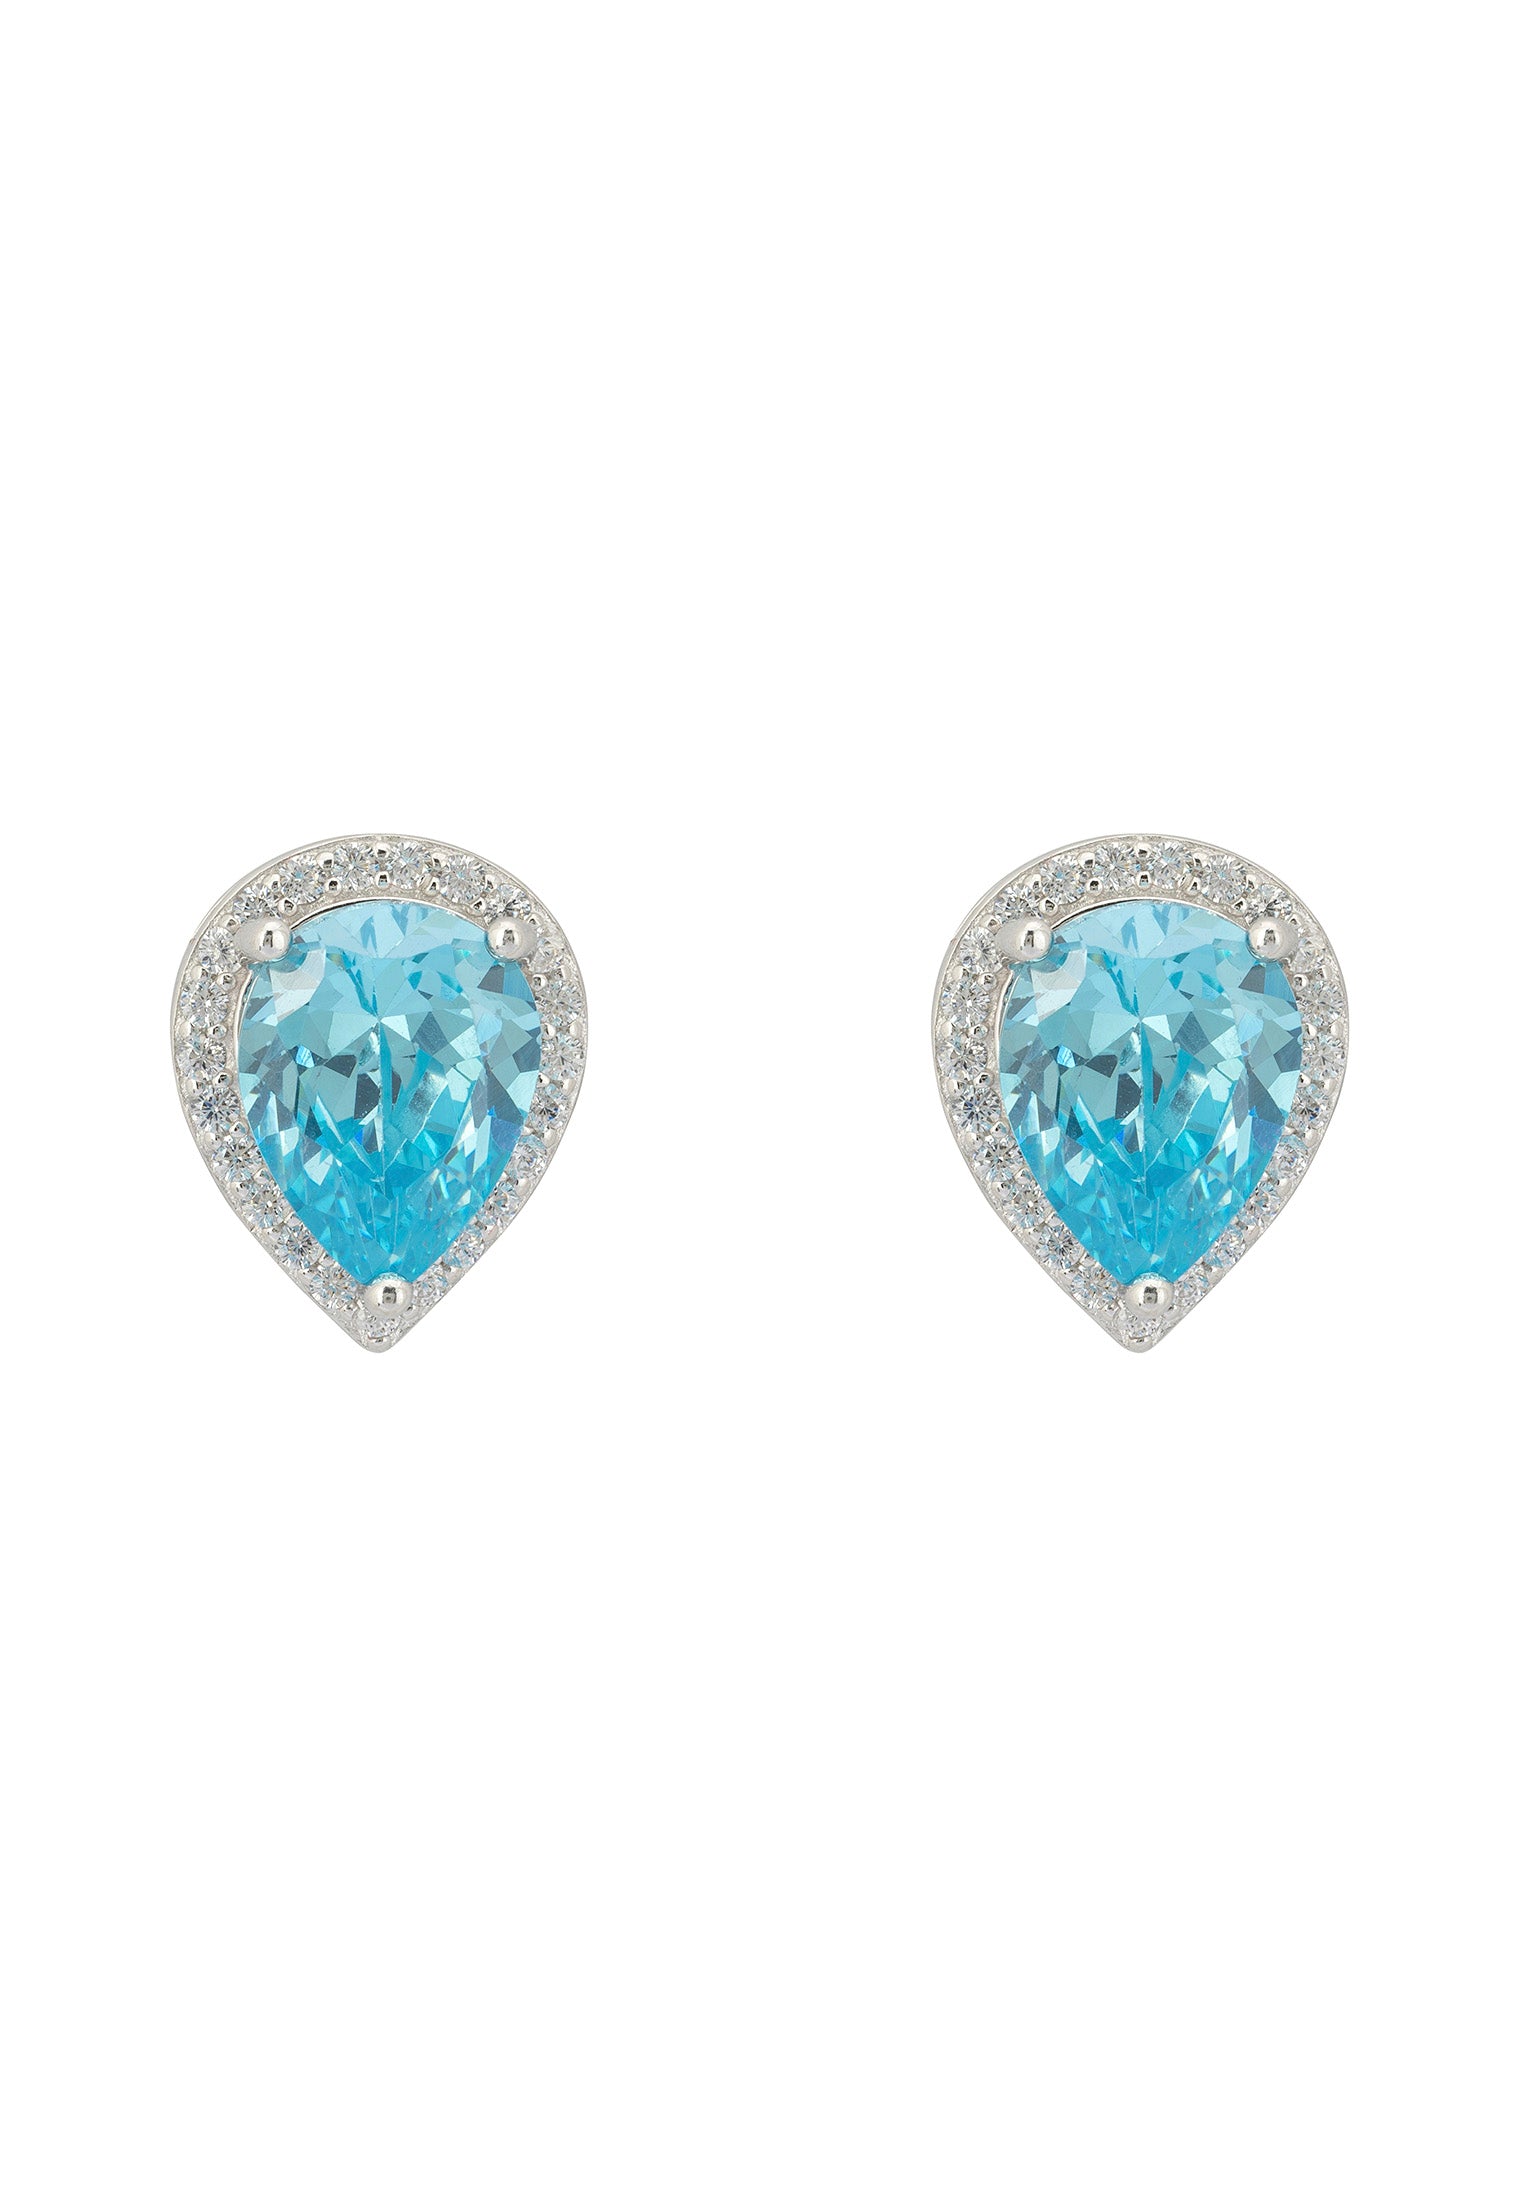 Theodora Blue Topaz Teardrop Gemstone Stud Earrings Silver